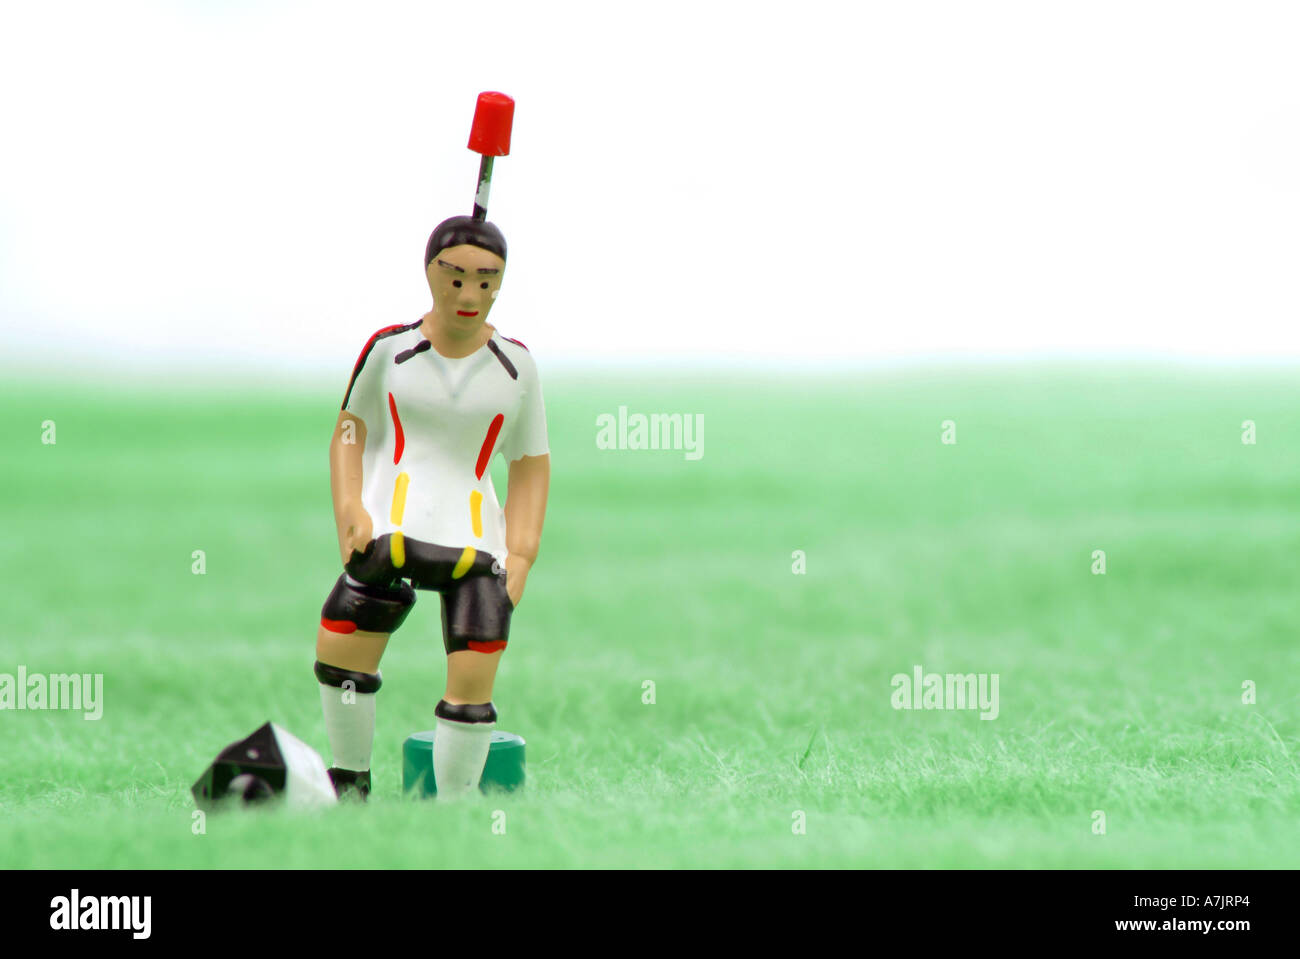 Fußballspiel Spieler soccer game player Stock Photo